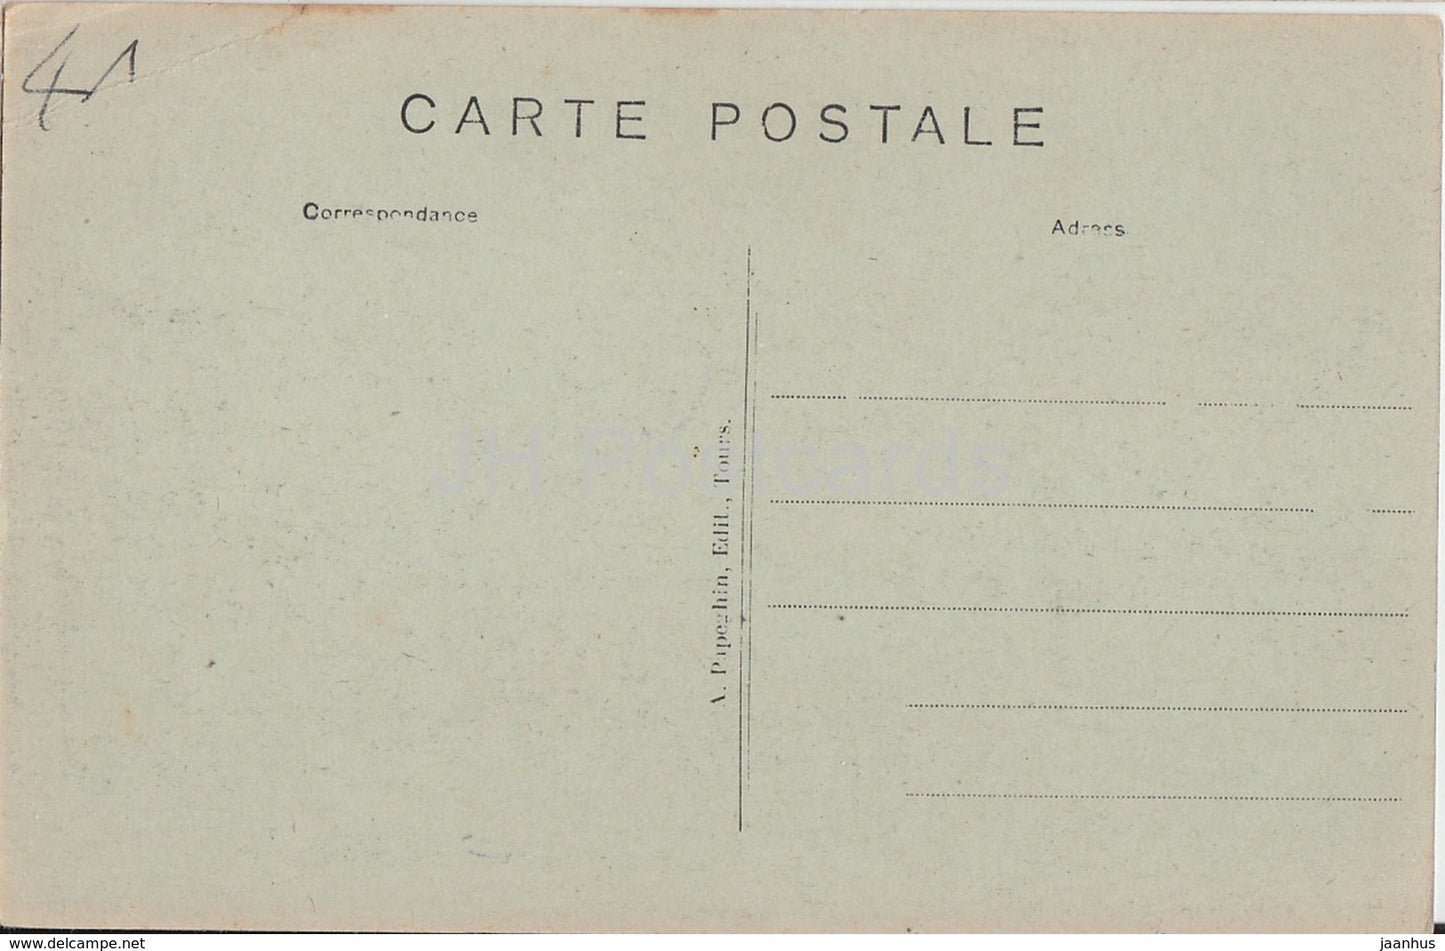 Cheverny - Le Chateau - L'Orangerie - 3 - château - carte postale ancienne - France - inutilisée